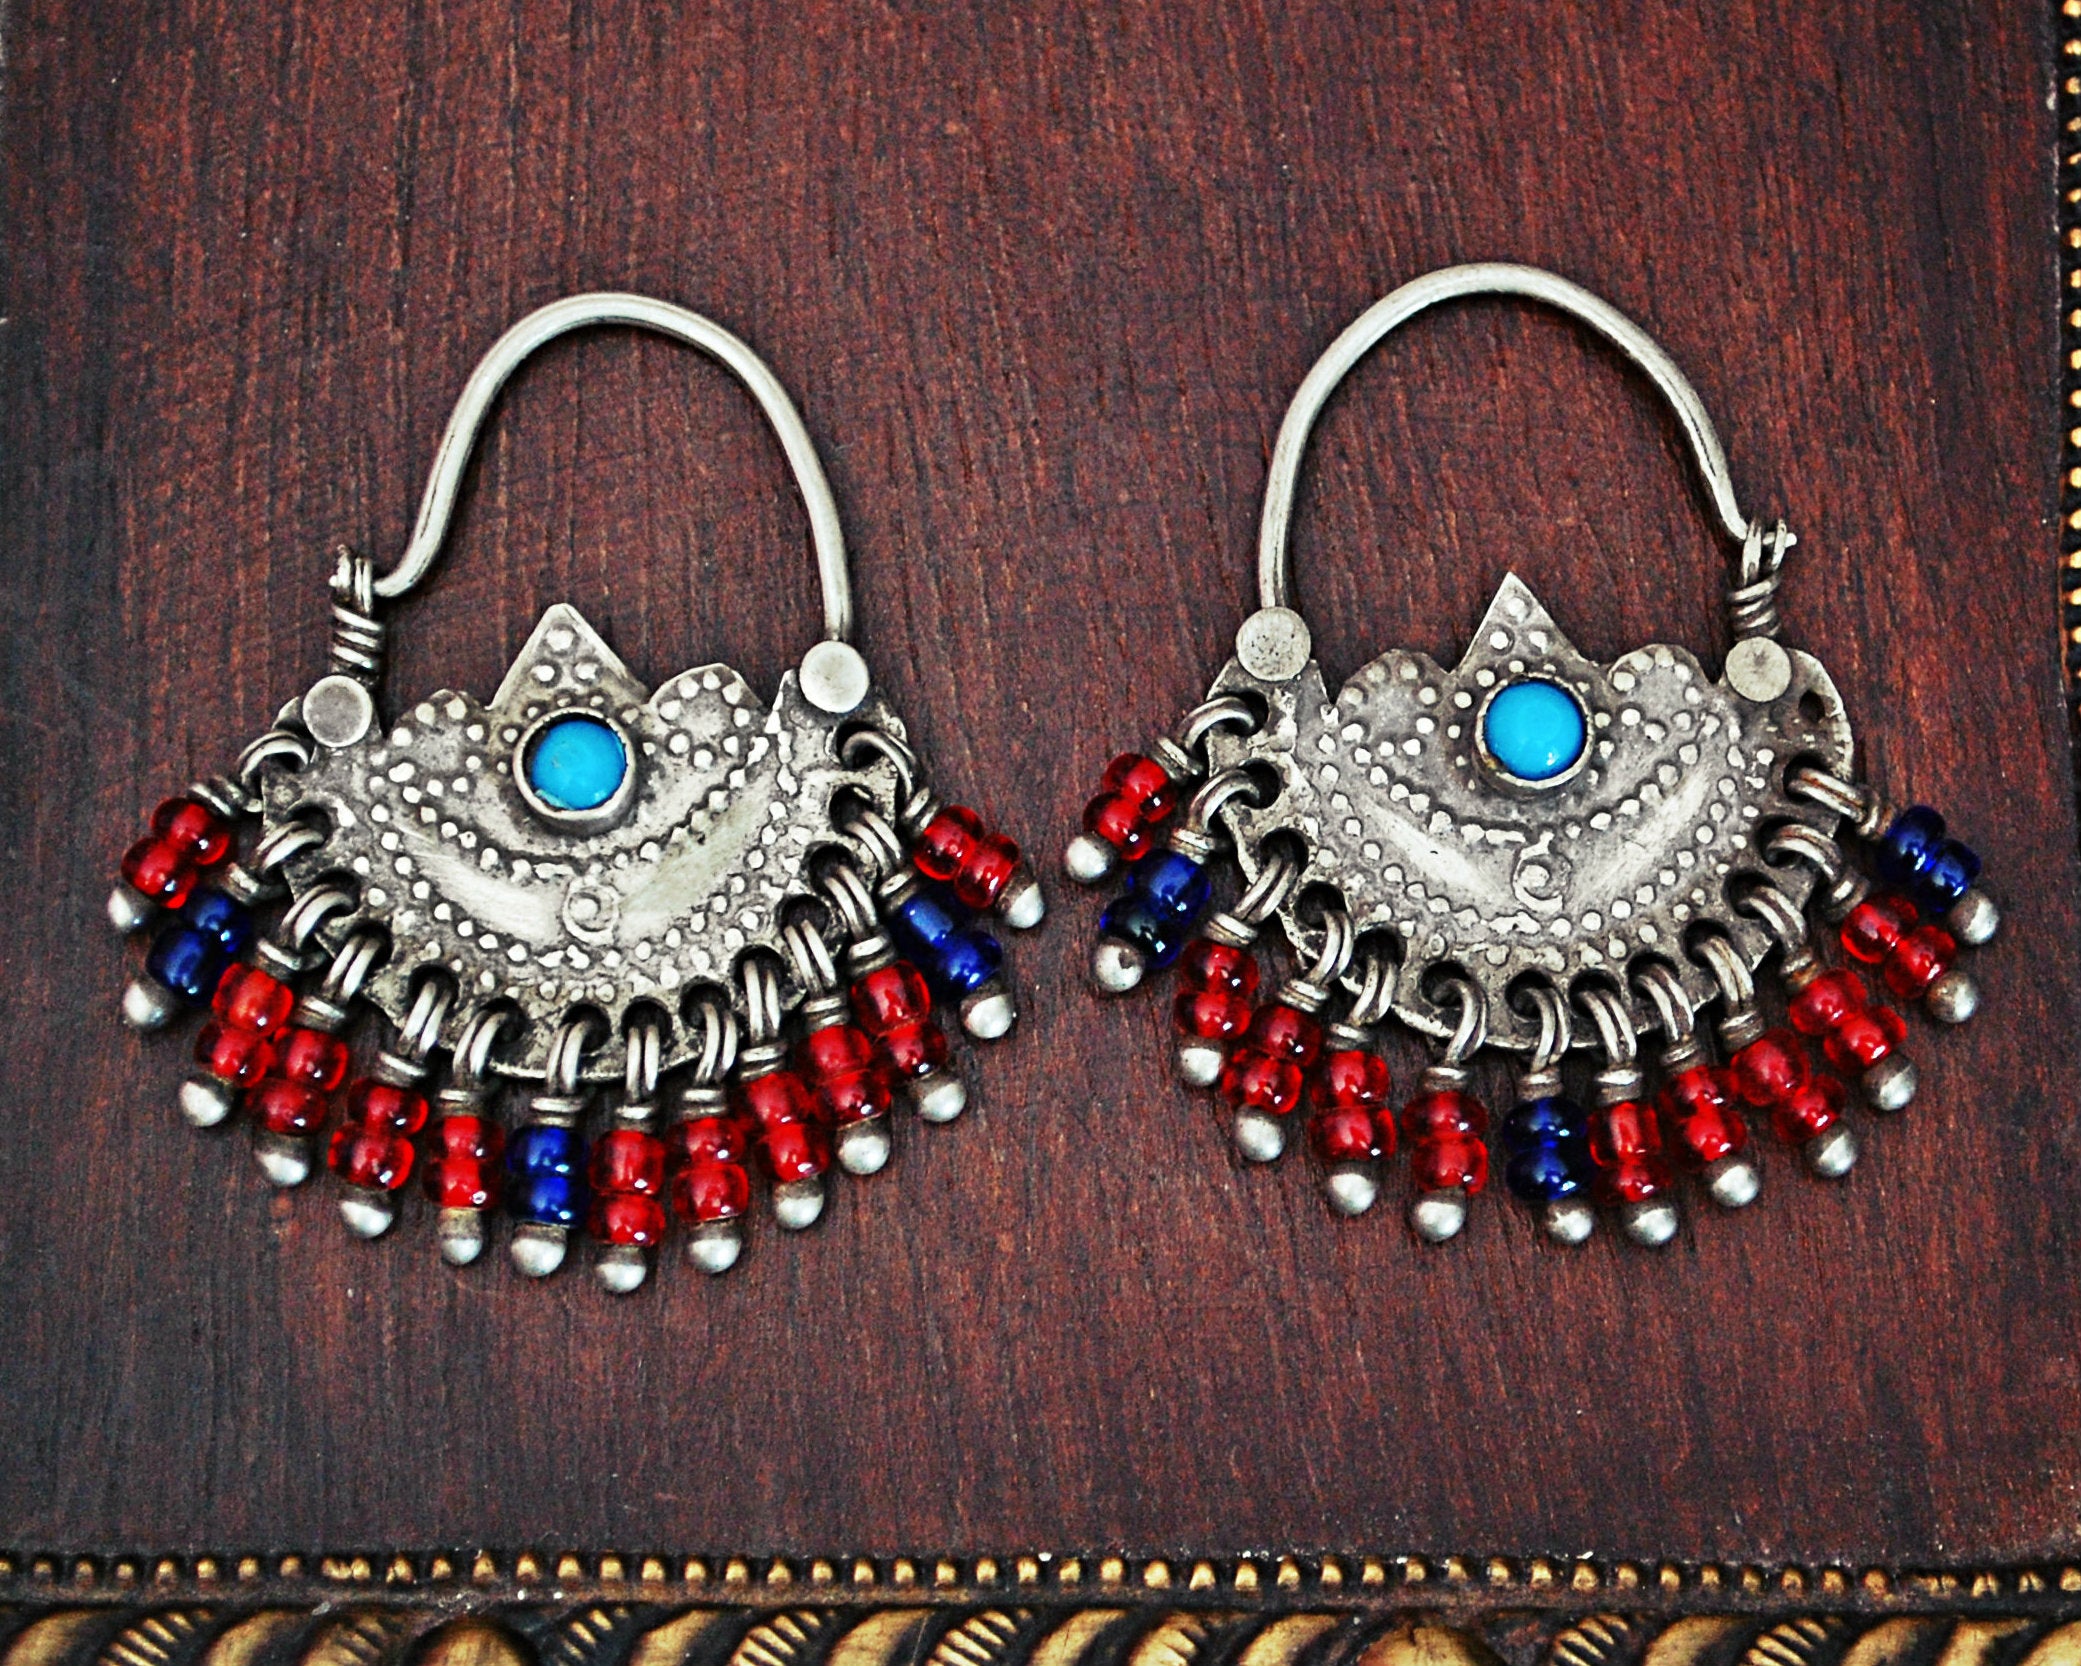 Afghani Hoop Earrings with Glass Bead Tassels